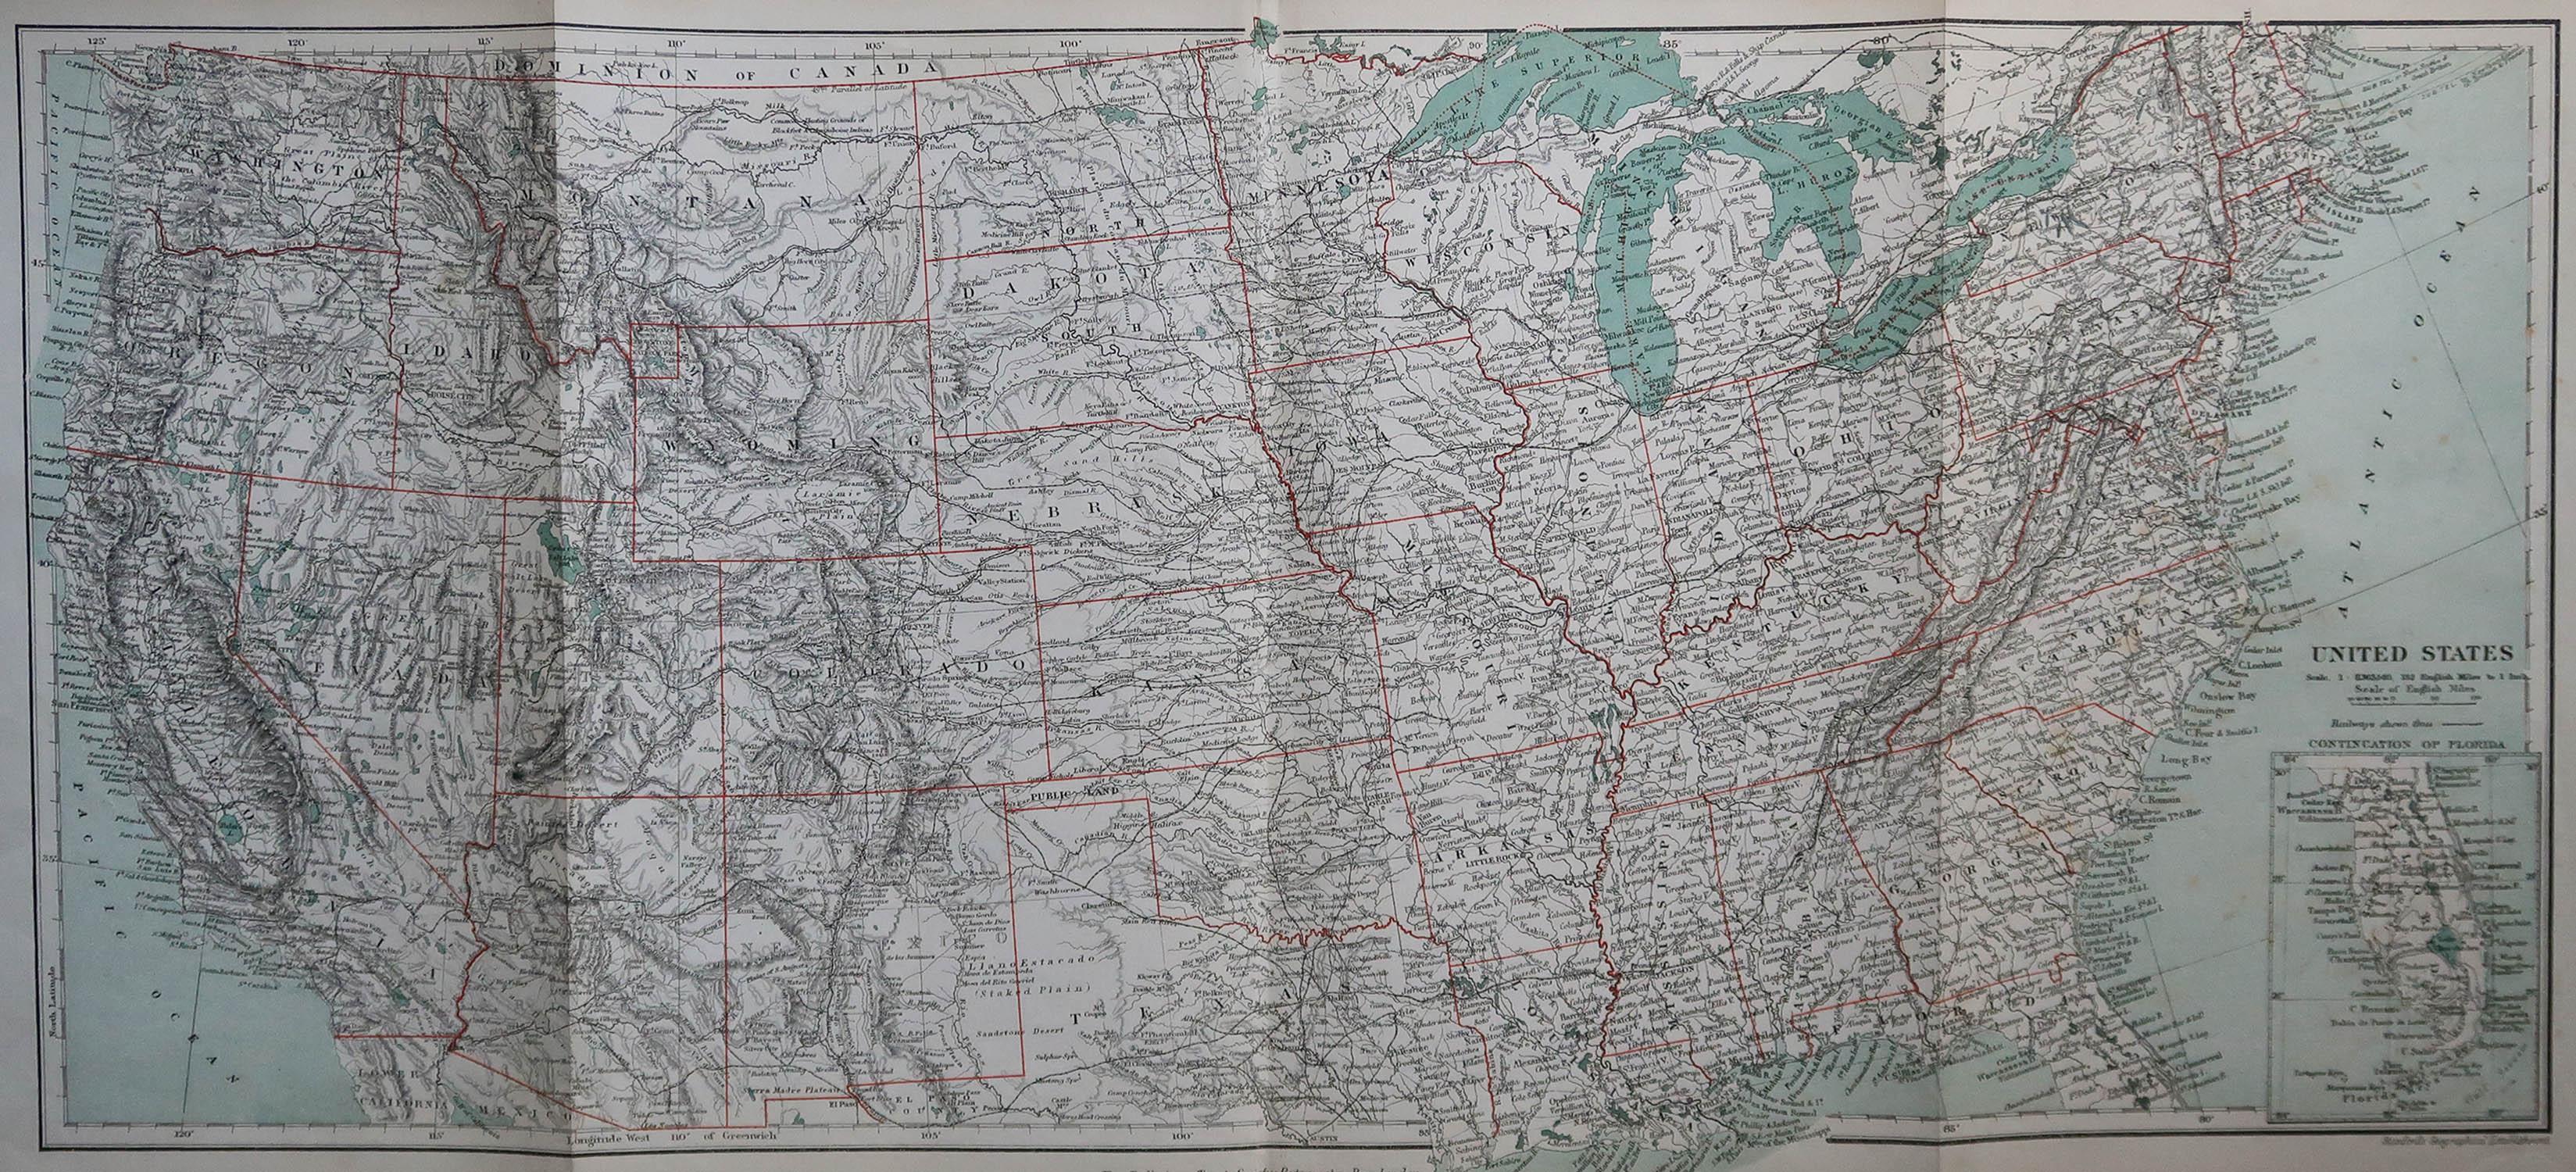 Gran mapa de EE.UU.

Por el Establecimiento Geográfico de Stanford

Color original

Sin enmarcar.








